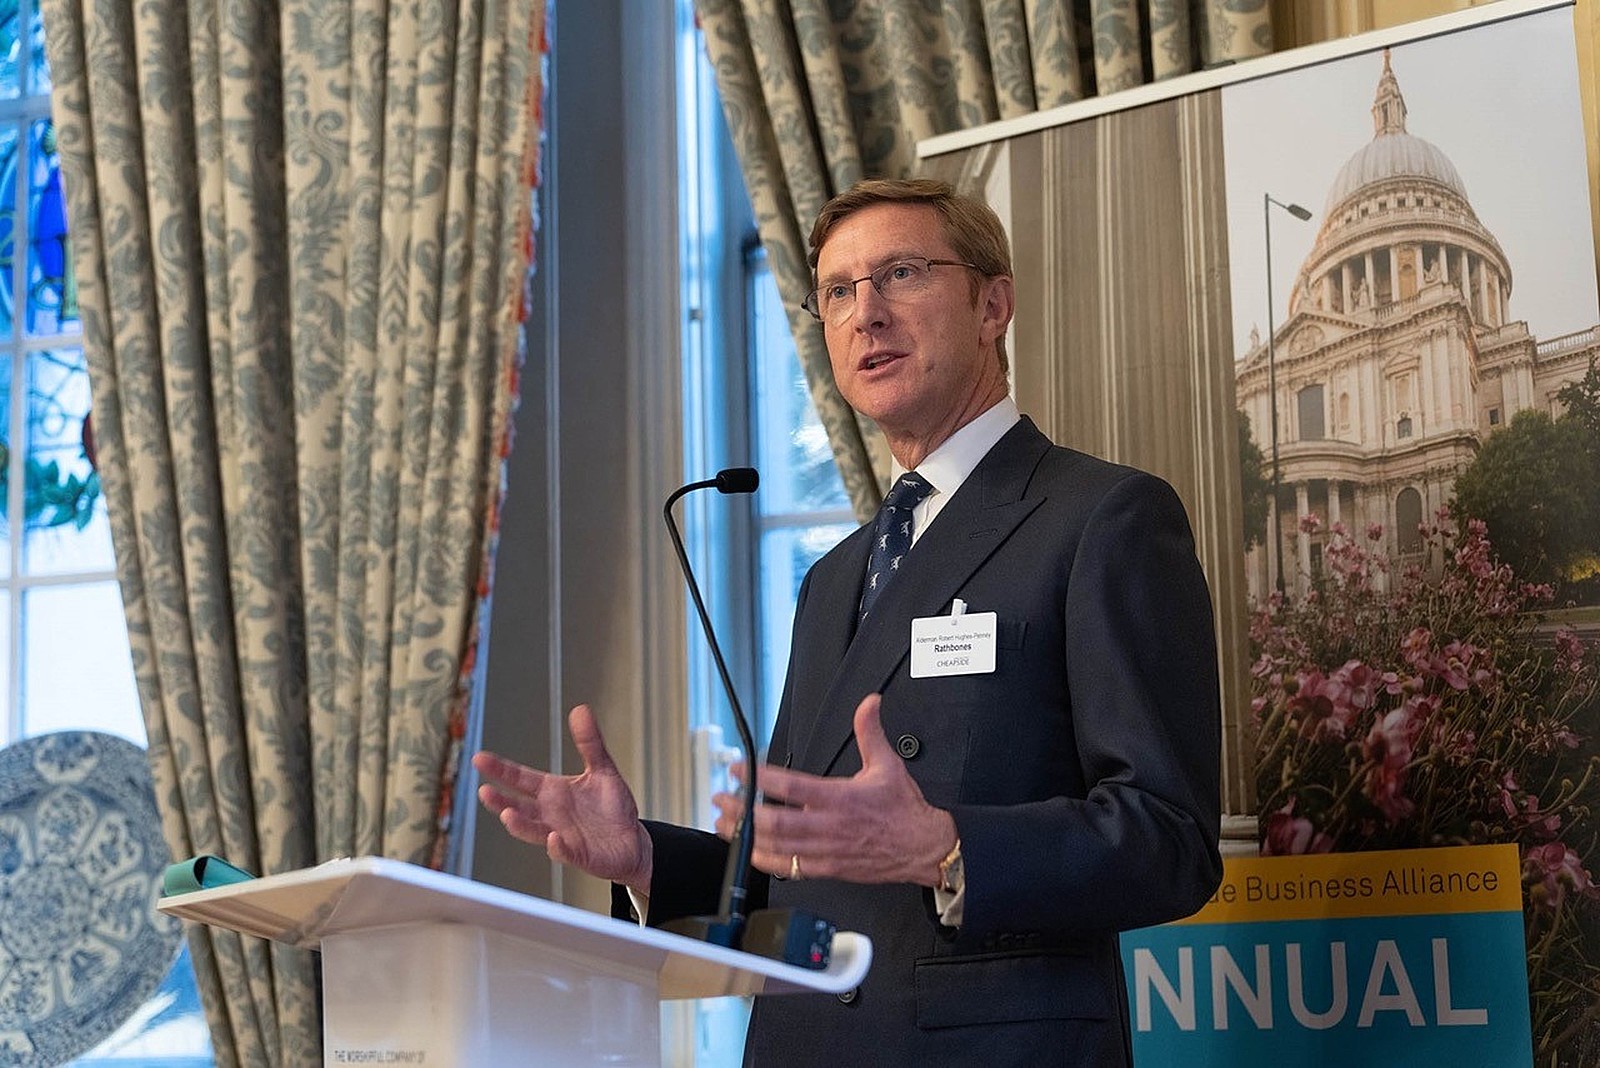 Robert Hughes-Penney - Cheapside Business Alliance Annual Report launch speech 2022